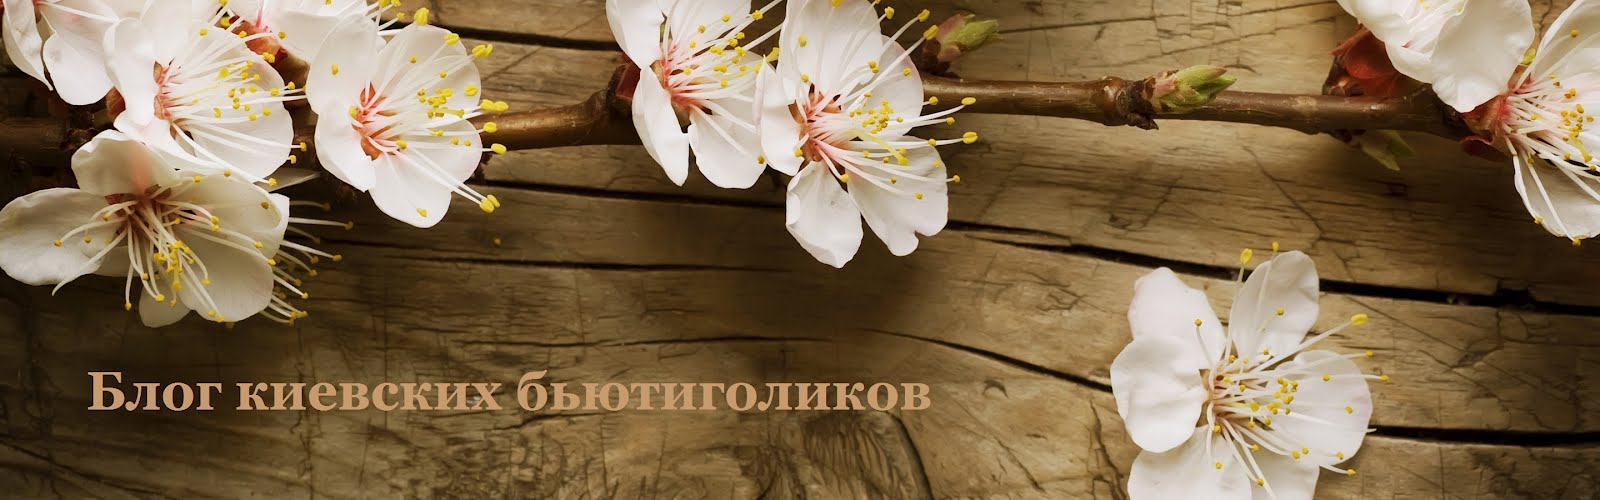 Блог киевских бьютиголиков